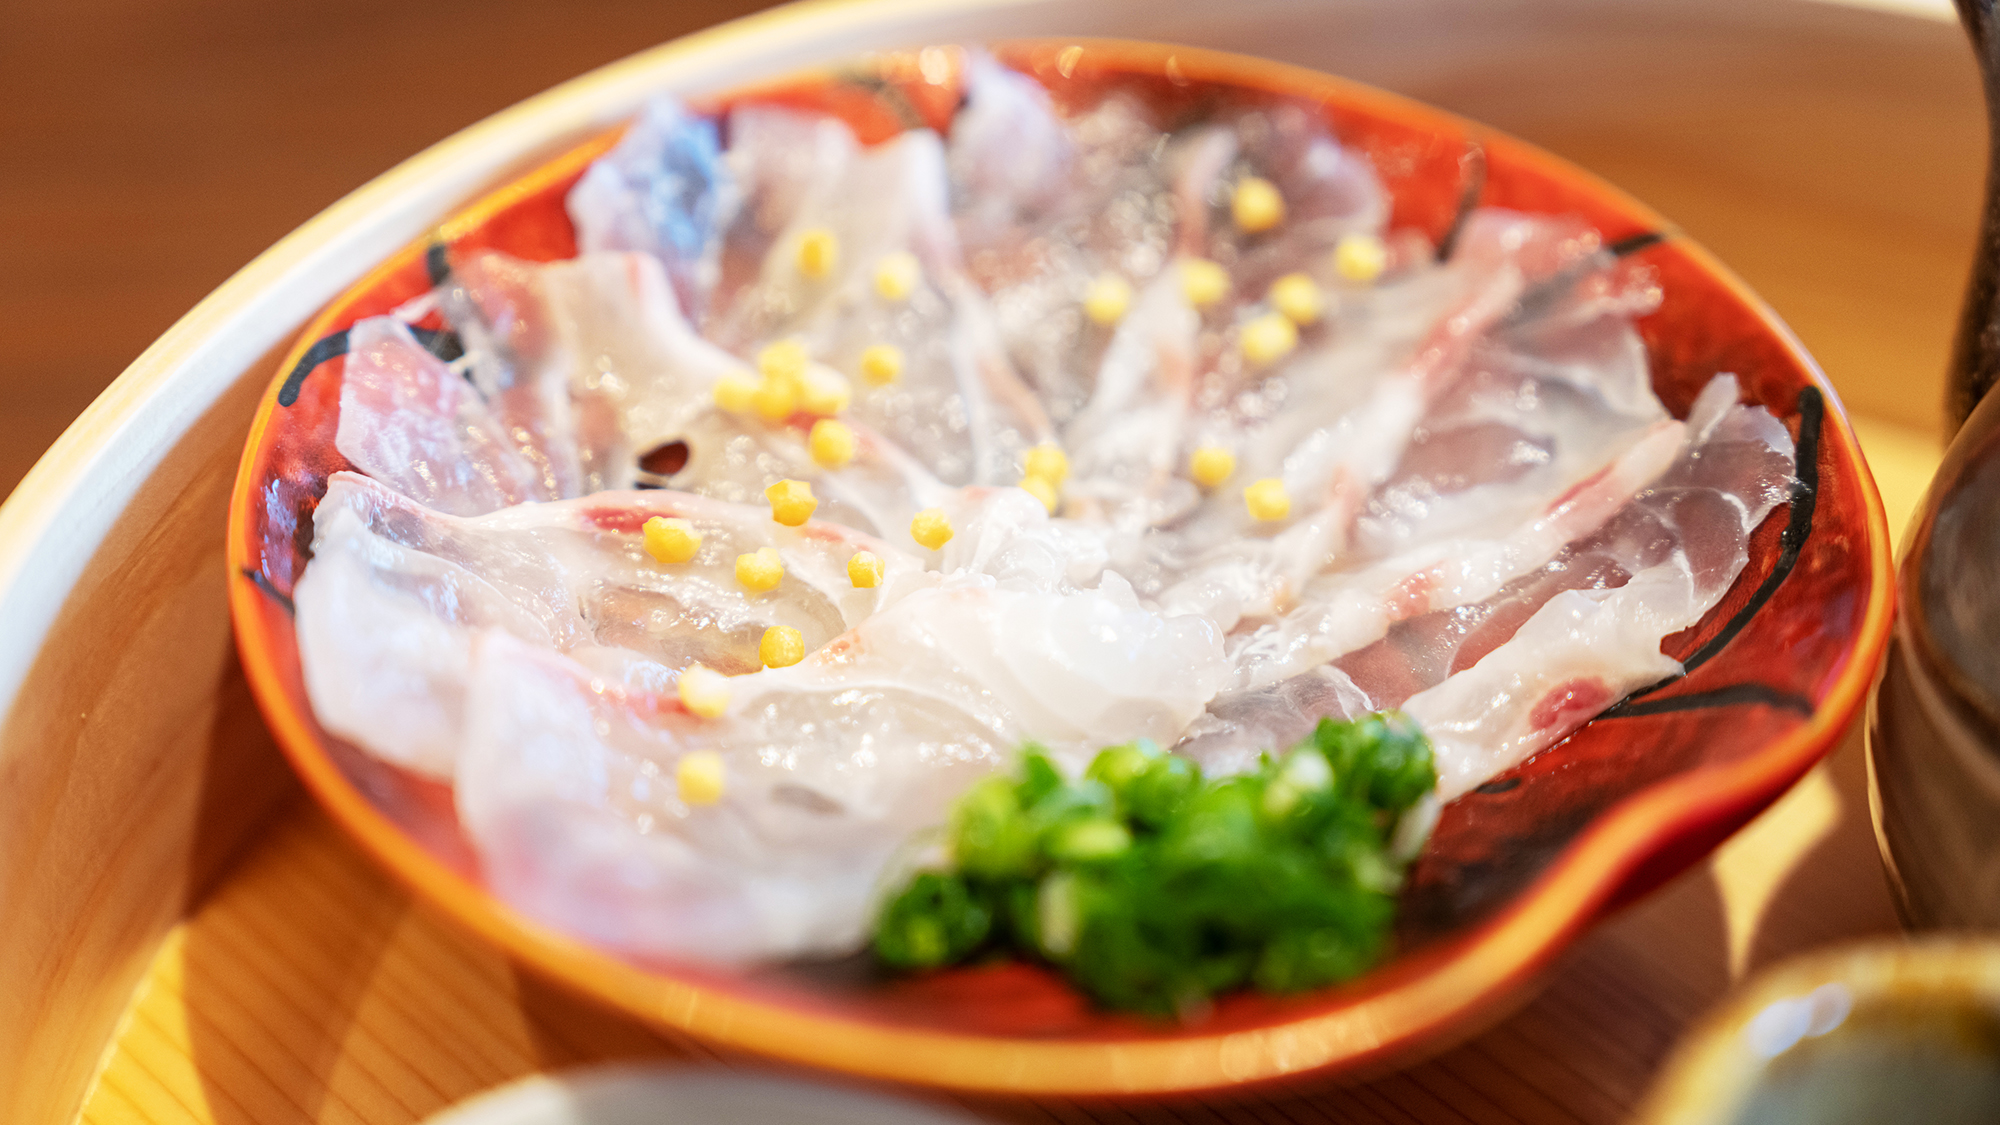 【天然真鯛胡麻茶漬膳】長崎県産天然真鯛のお刺身を朝から。〆は出汁茶漬けで二度楽しめます